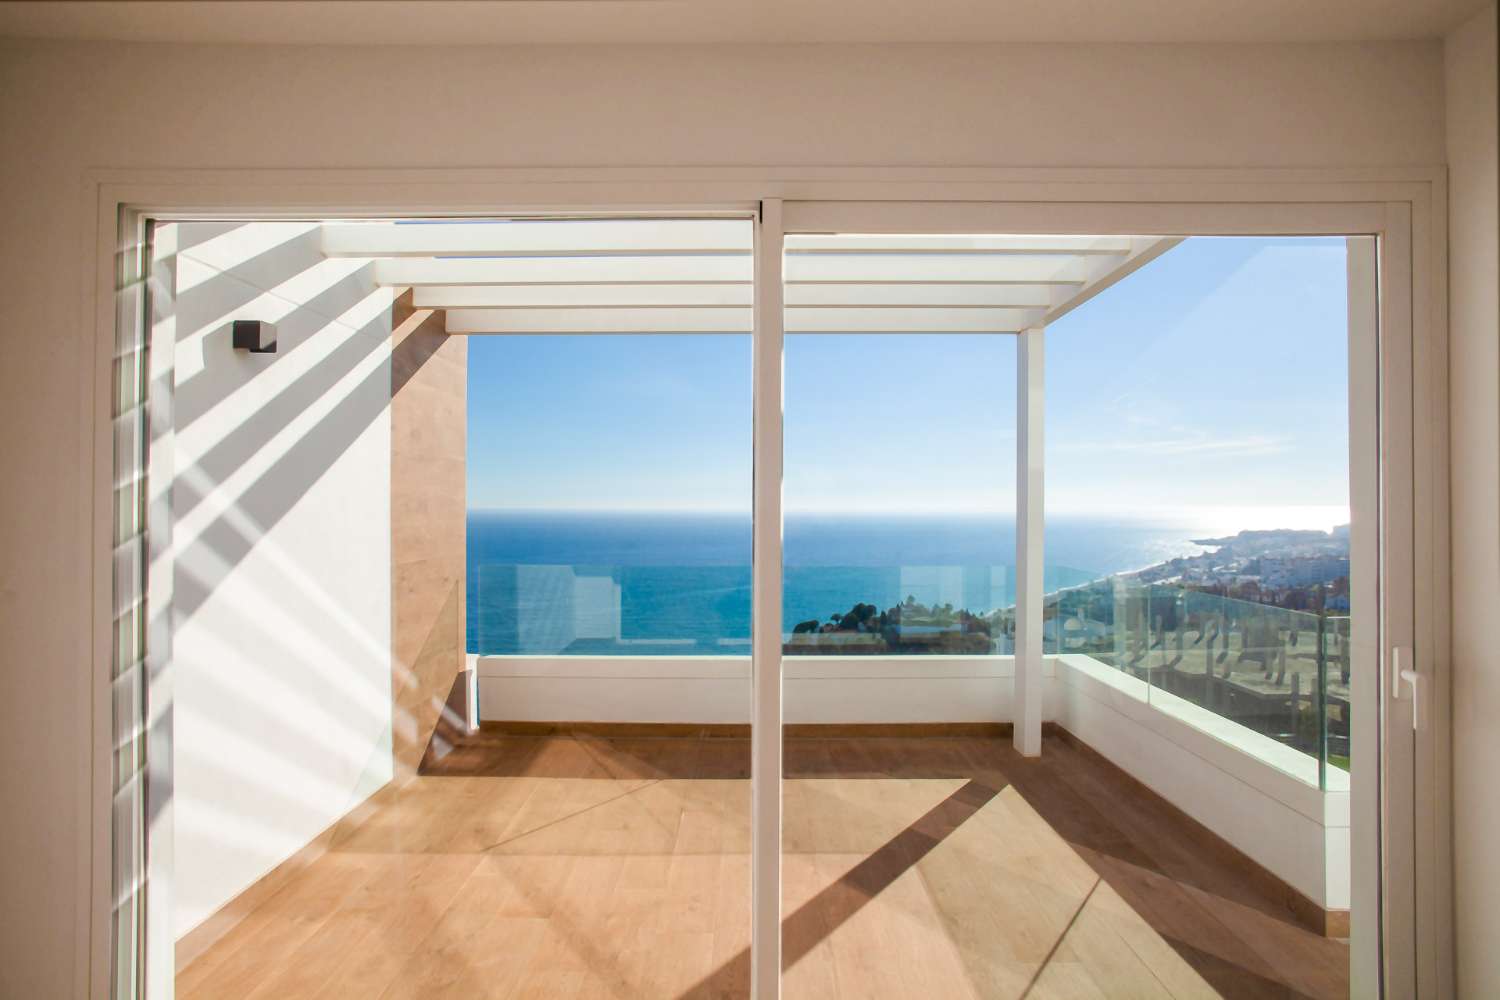 Penthouse disponible dans un complexe résidentiel avec une vue imprenable sur la mer